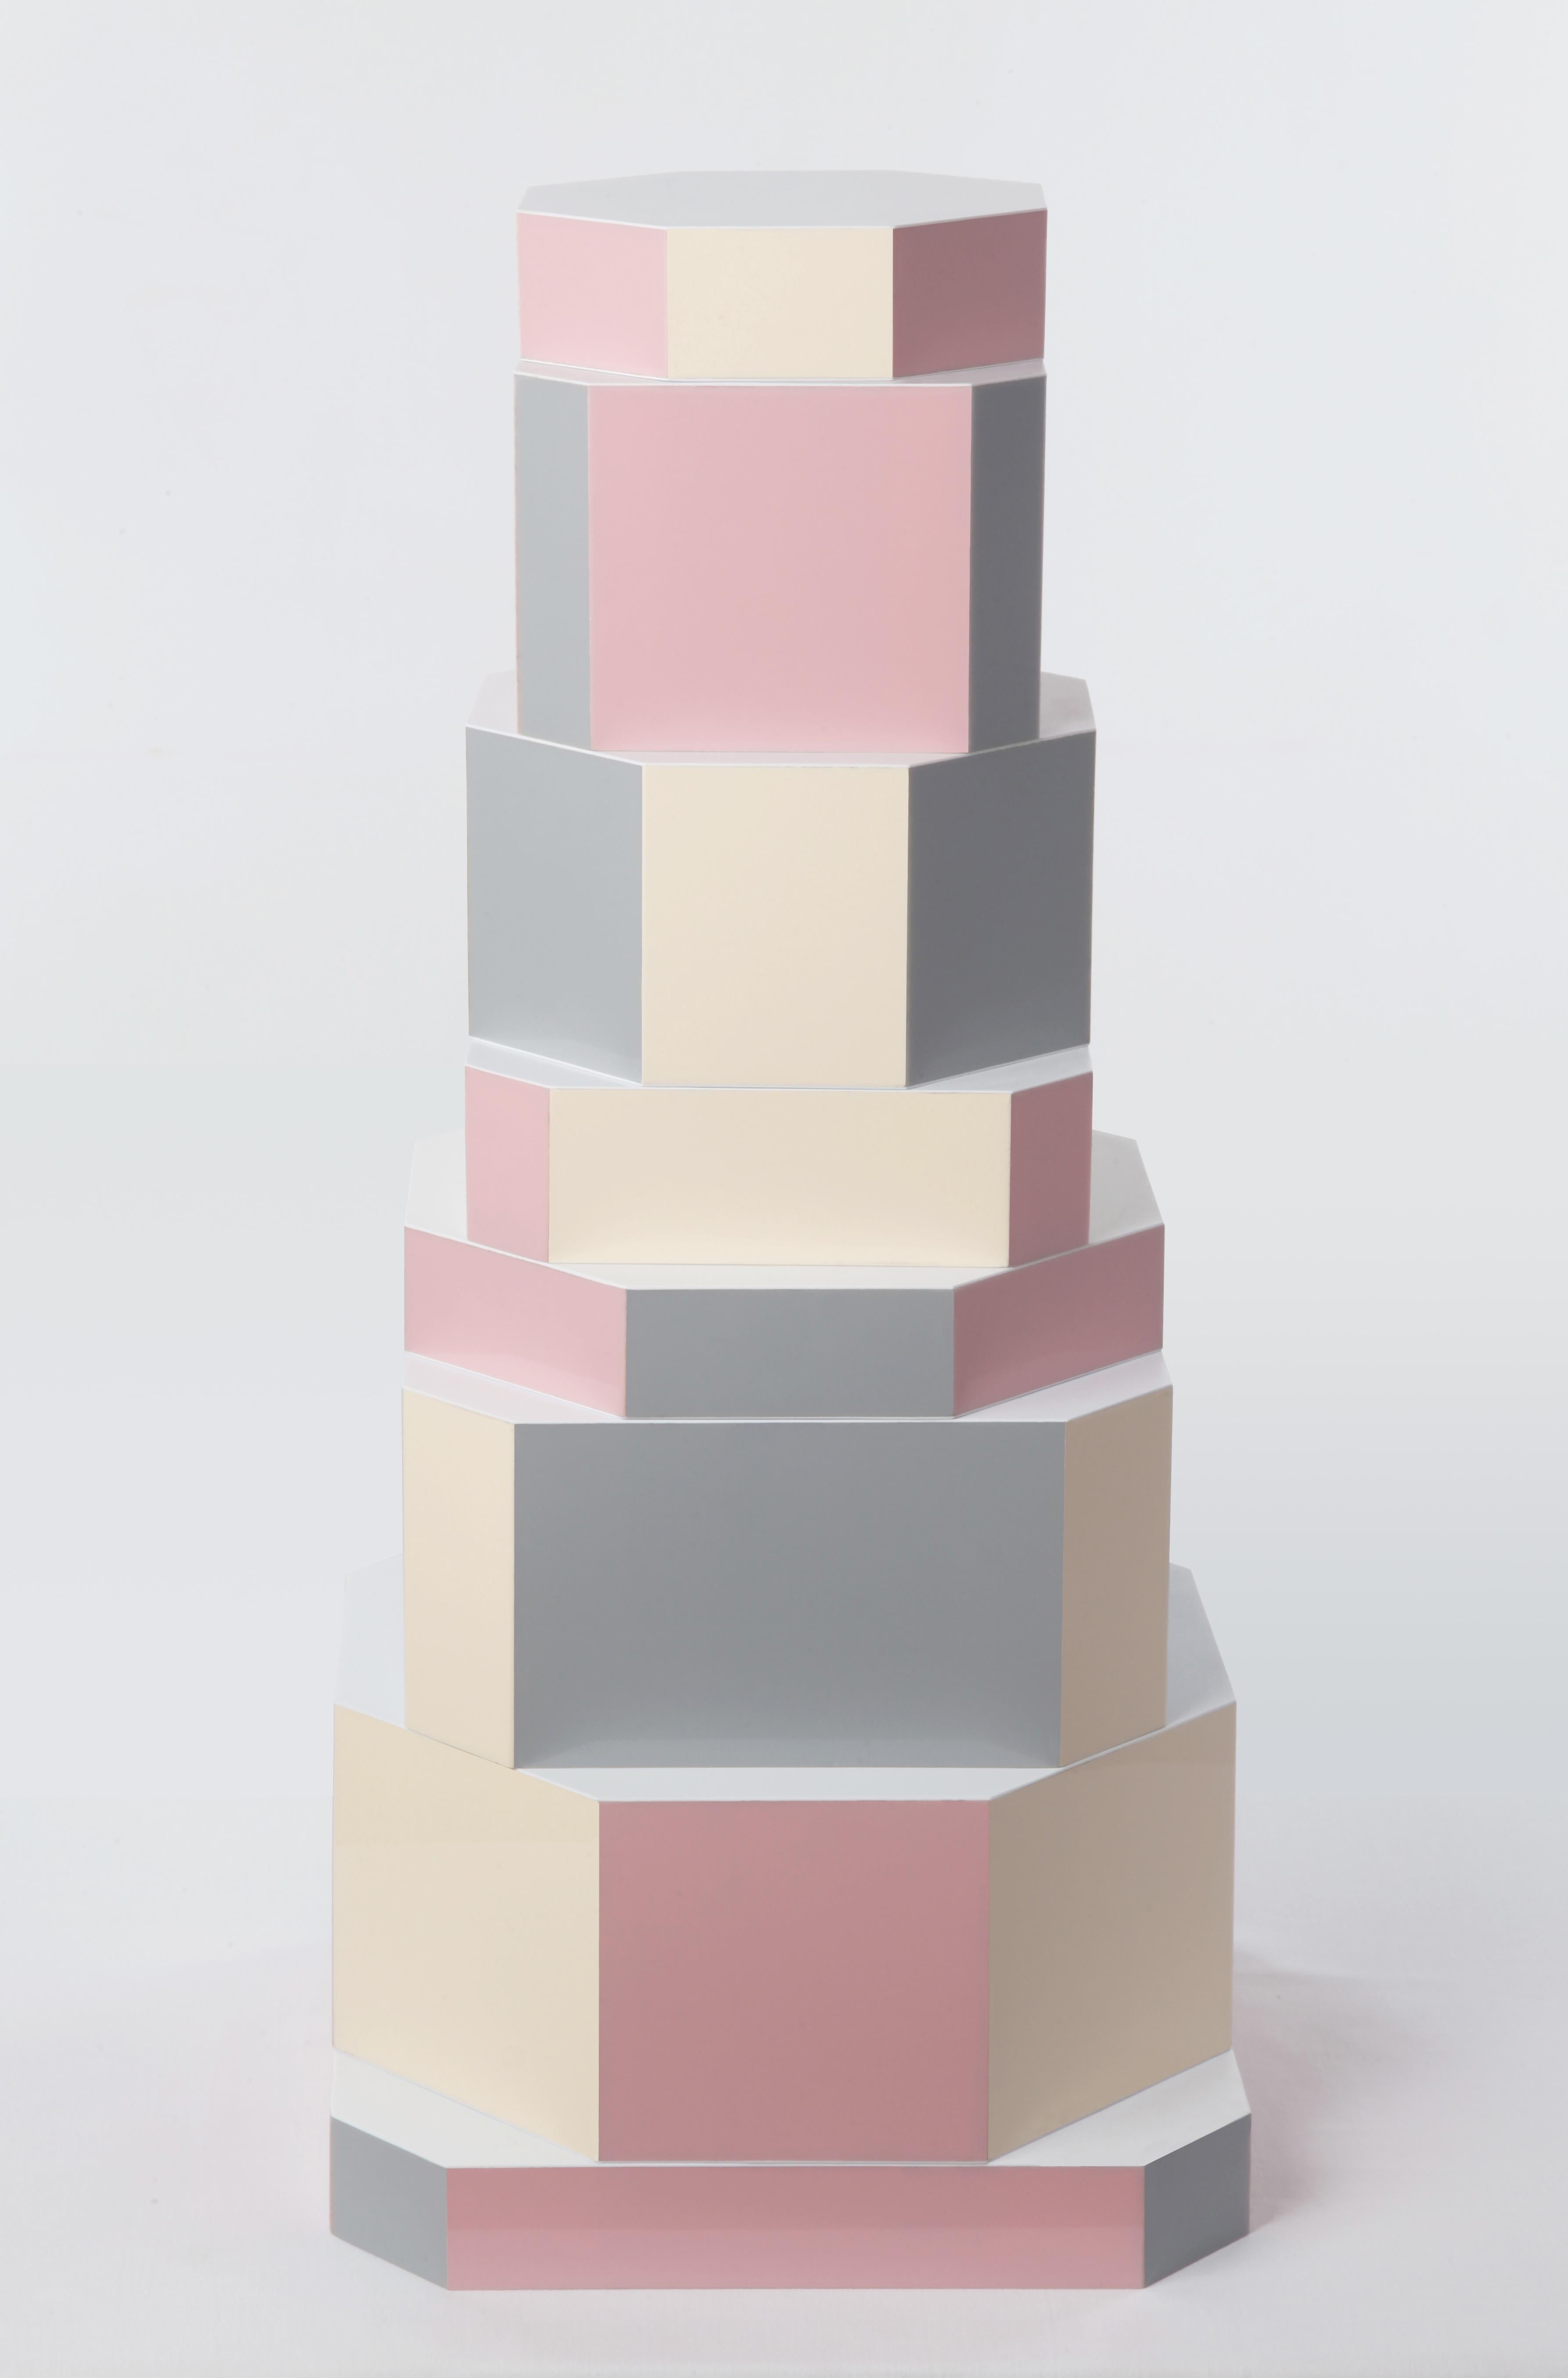 Pixel Ziggurat boxes by Oeuffice
Édition : 12 + 2AP
2012
Dimensions : 25 x 25 x 55 cm
MATERIAL : Boîte en bois, acrylique

L'édition Pixel est une interprétation ludique de la série Ziggurat qui
utilise une gamme douce de couleurs pastel